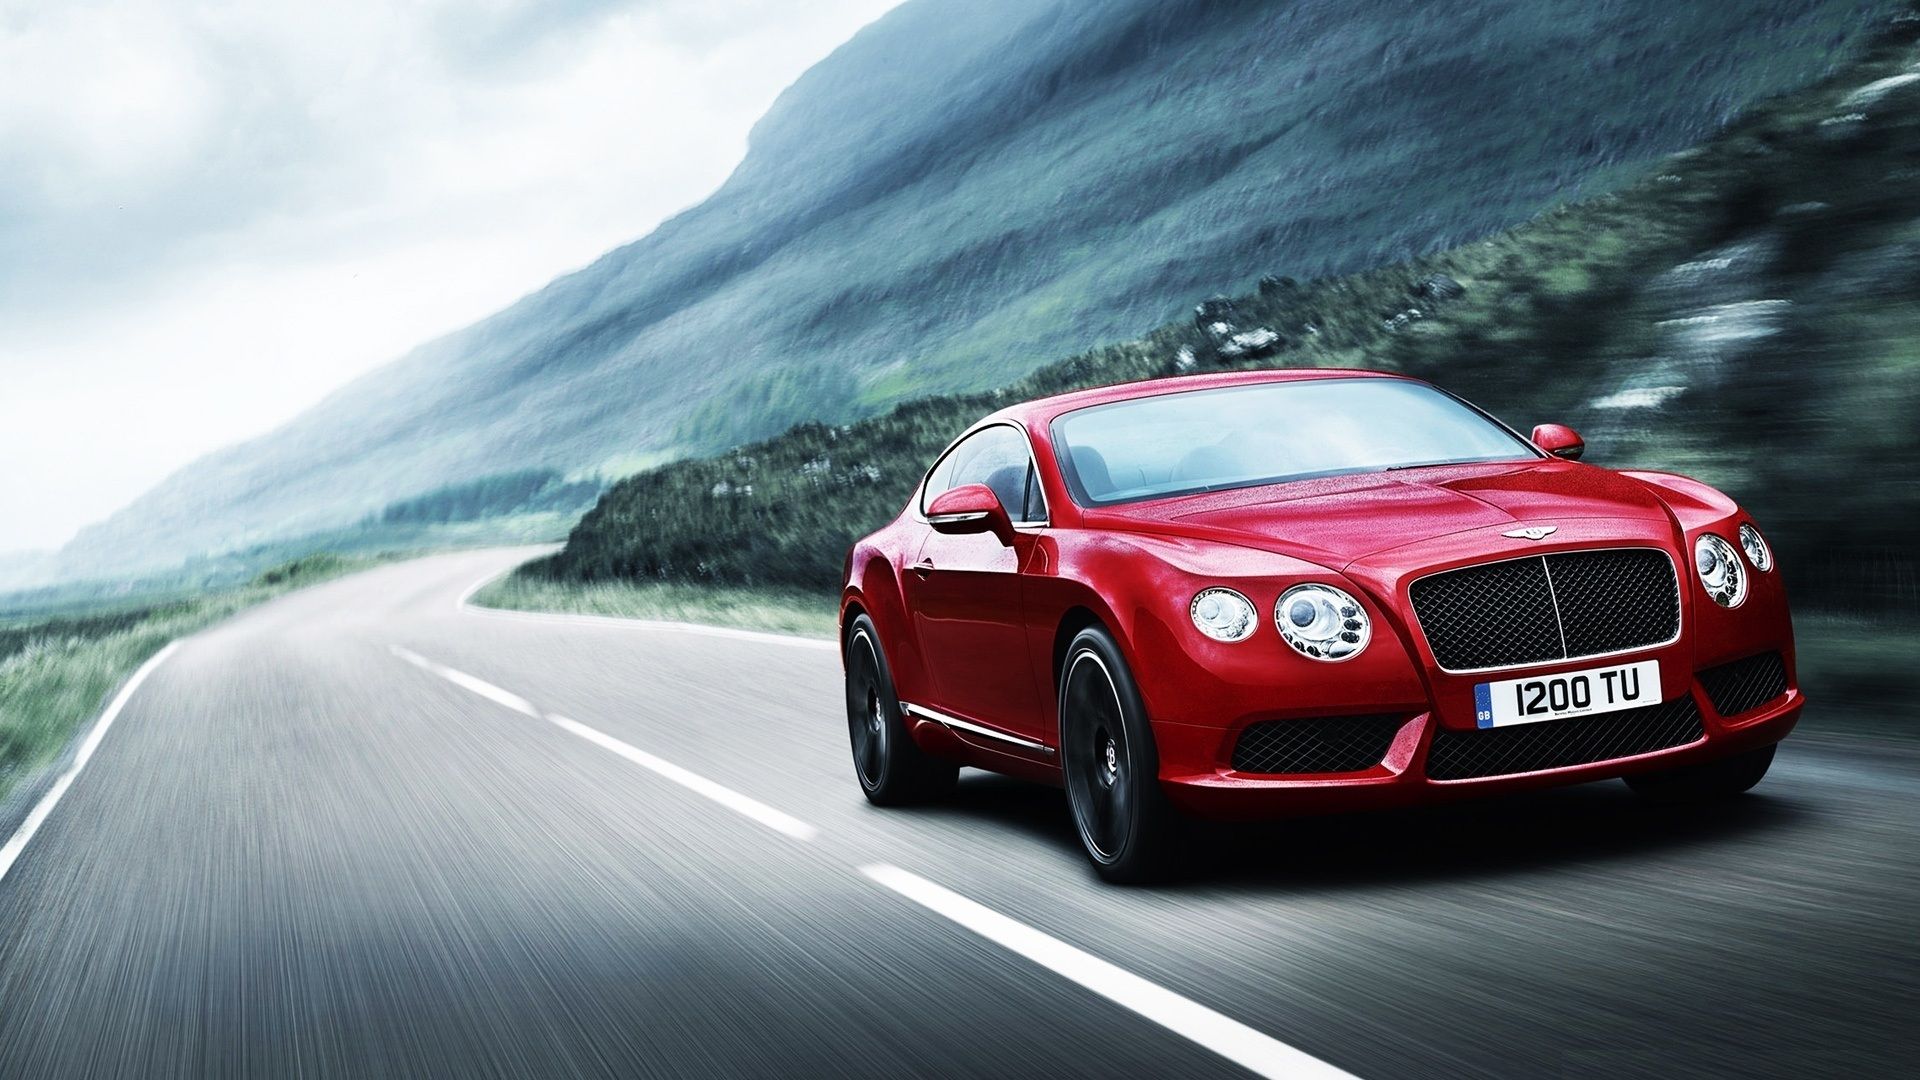 Hình nền xe Bentley đỏ cho bạn cảm giác sang trọng và mạnh mẽ. Chiếc xe này không chỉ là phương tiện di chuyển mà còn là một biểu tượng của thành công và đẳng cấp. Hãy tận hưởng những khoảnh khắc xa hoa và đầy cảm xúc cùng hình nền này.